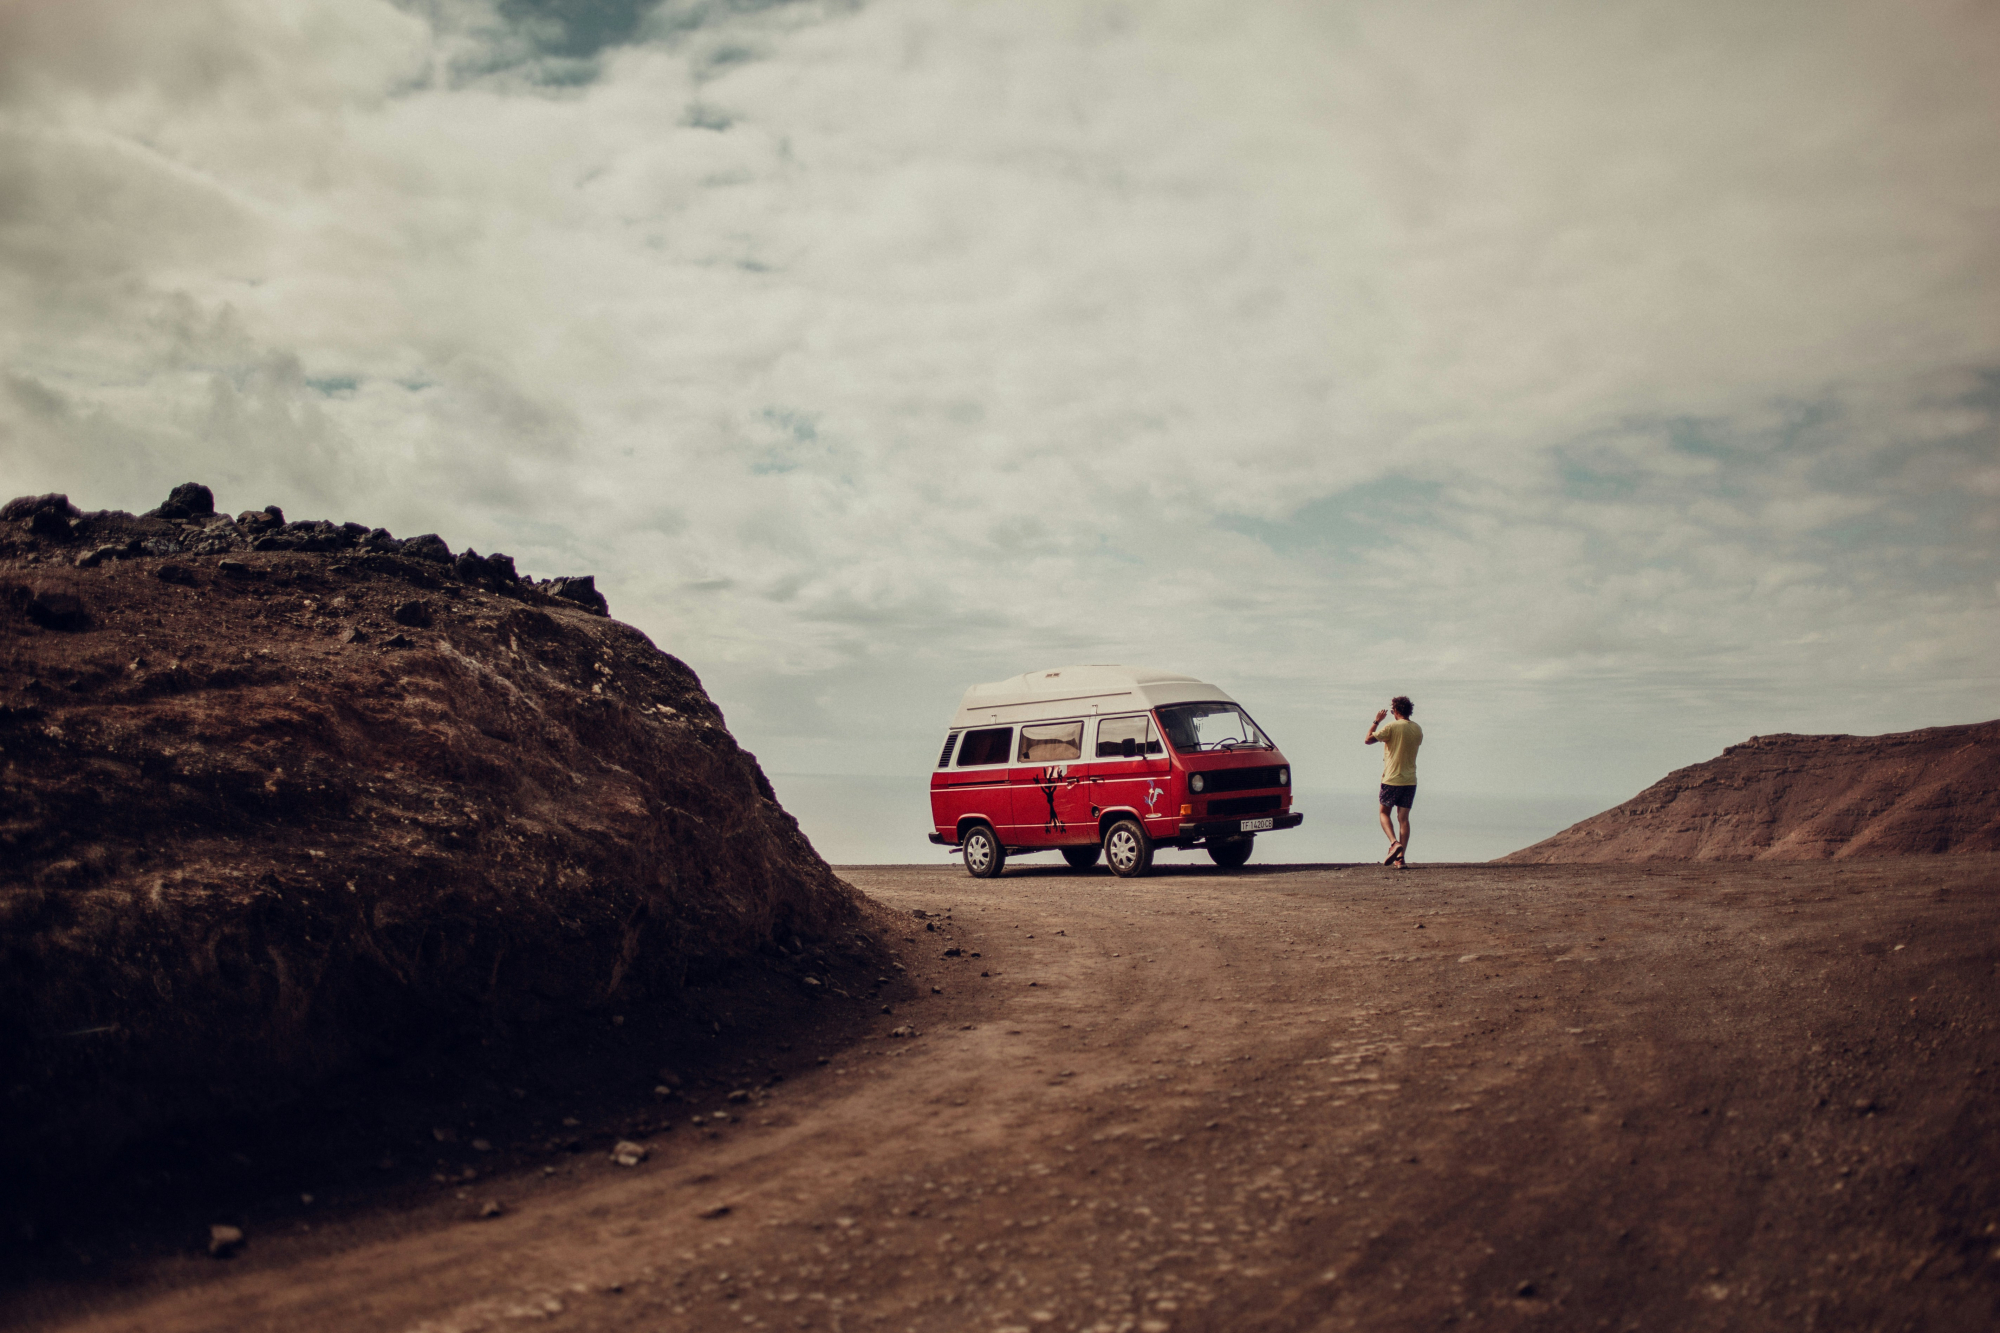 découvrez des aventures inoubliables lors d'un road trip à travers des paysages à couper le souffle.